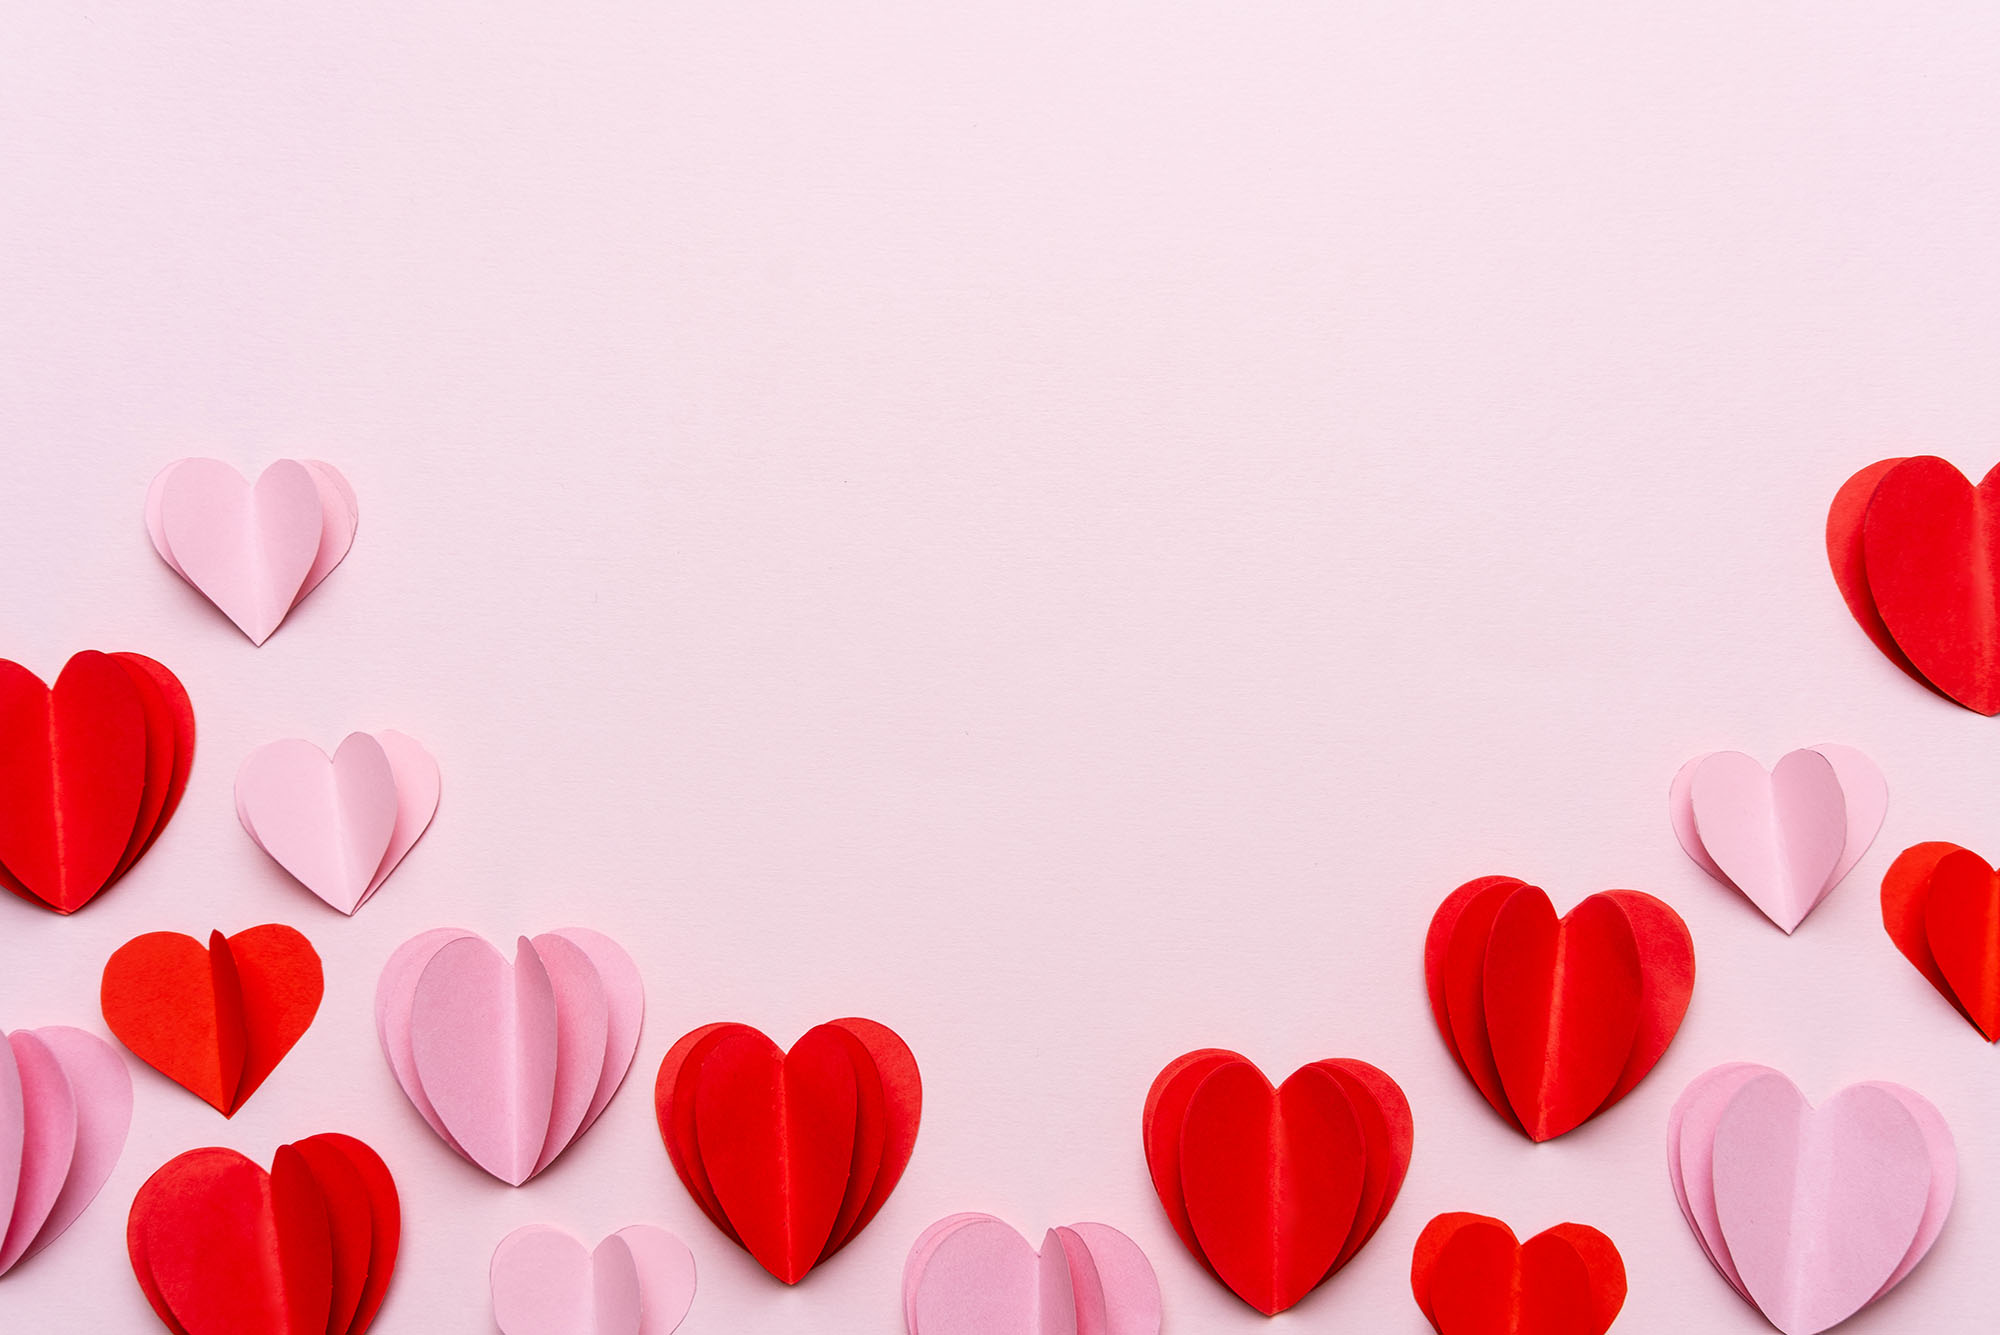 Những thông điệp tình yêu và tình cảm biết ơn trong ngày Valentine sẽ khiến bạn cảm thấy xúc động và yêu đời hơn bao giờ hết. Hãy xem ngay những hình ảnh đẹp và cảm nhận tình yêu đong đầy qua từng lời nhắn nhủ.